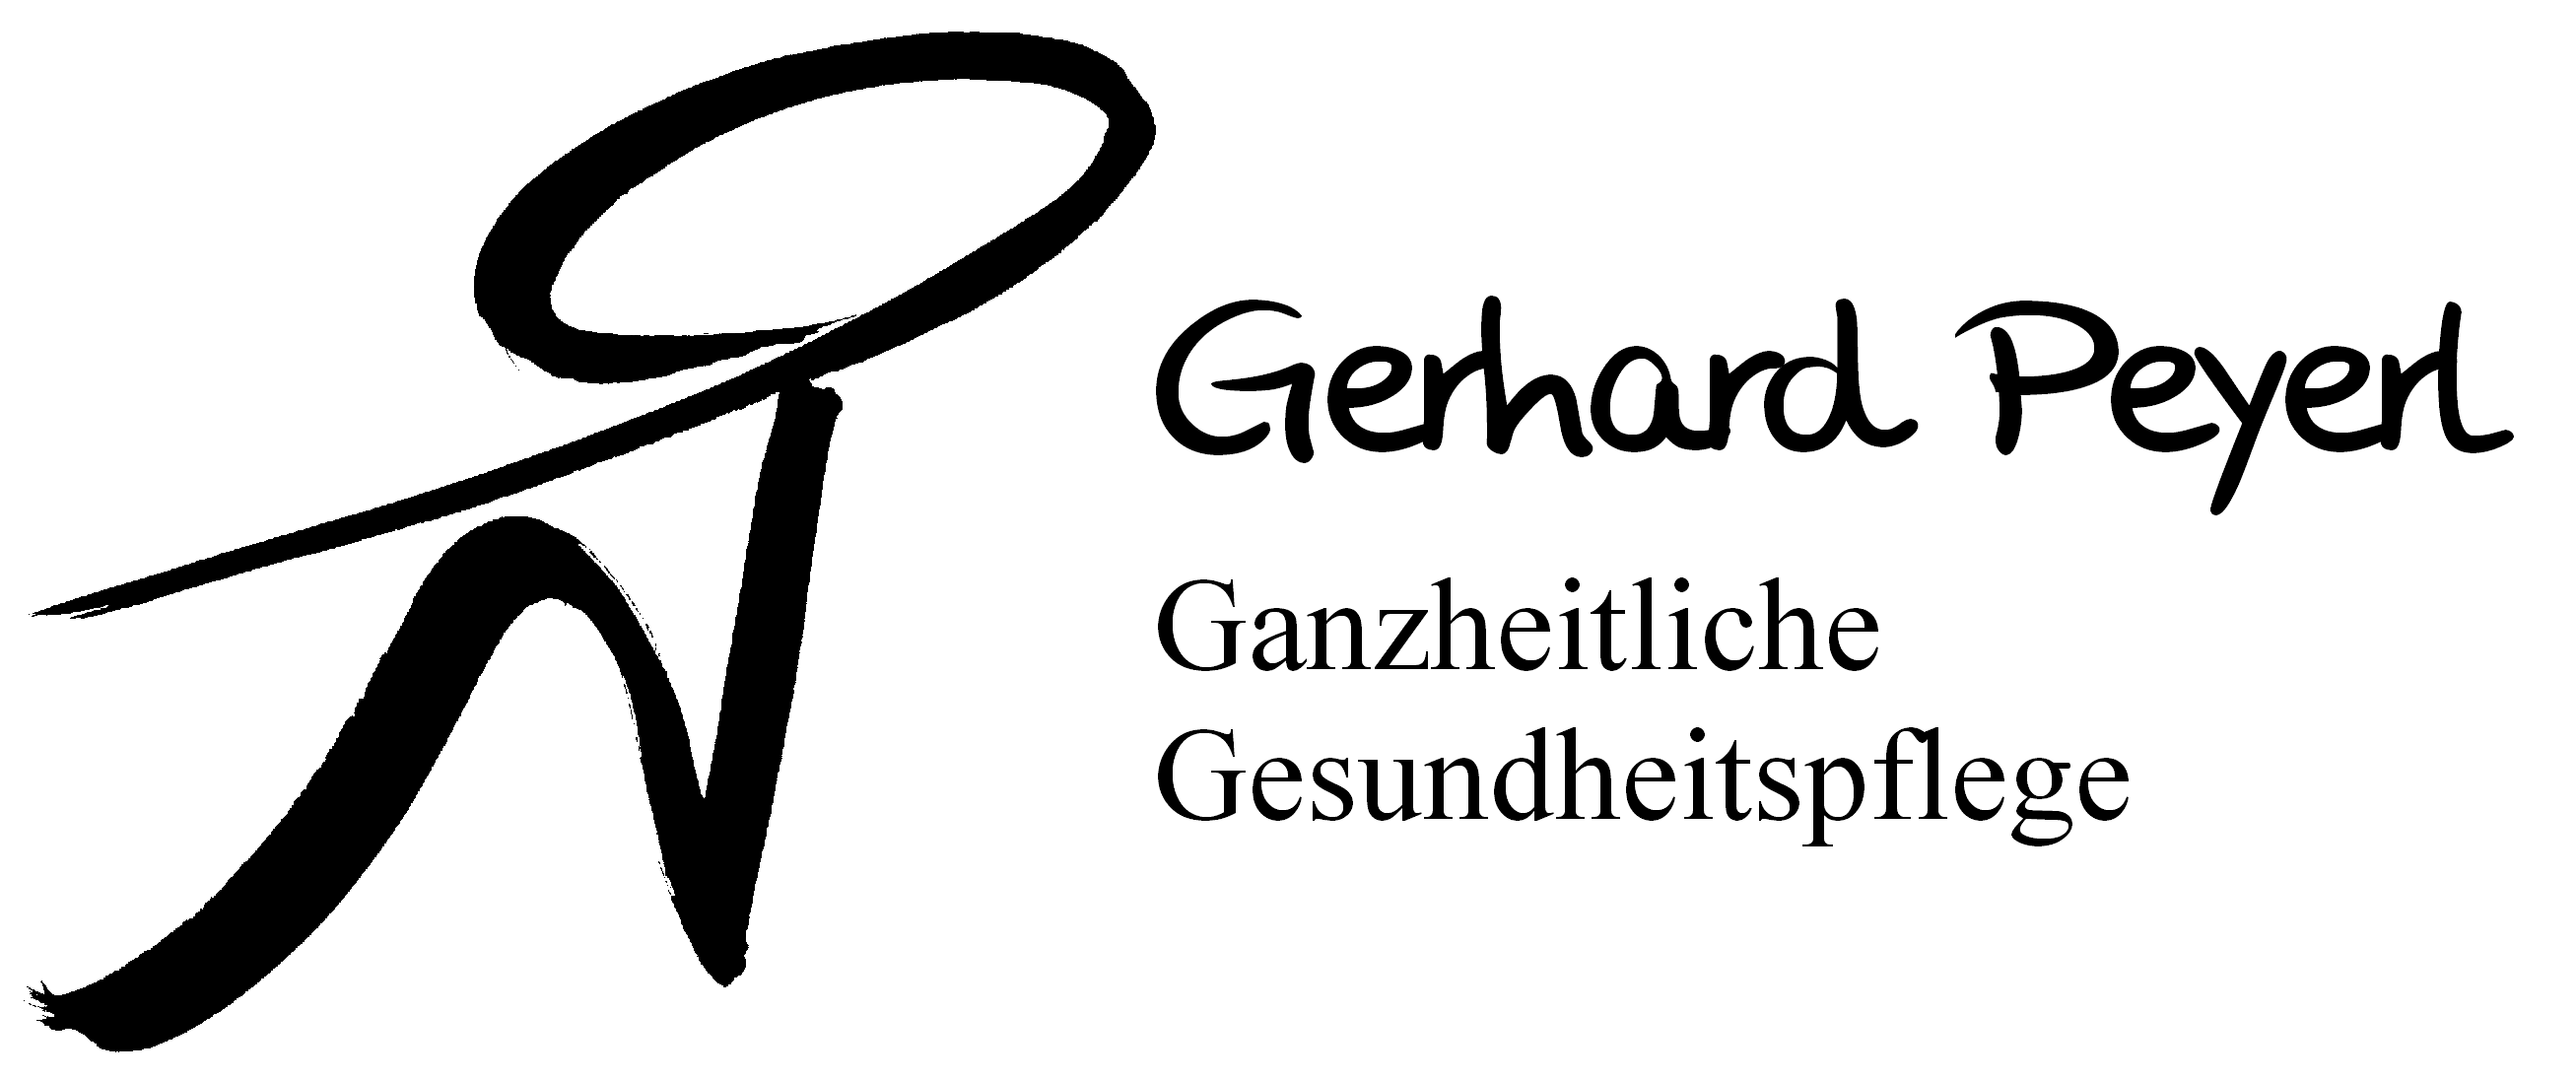 Gerhard Peyerl, Ganzheitliche Gesundheitspflege, Logo